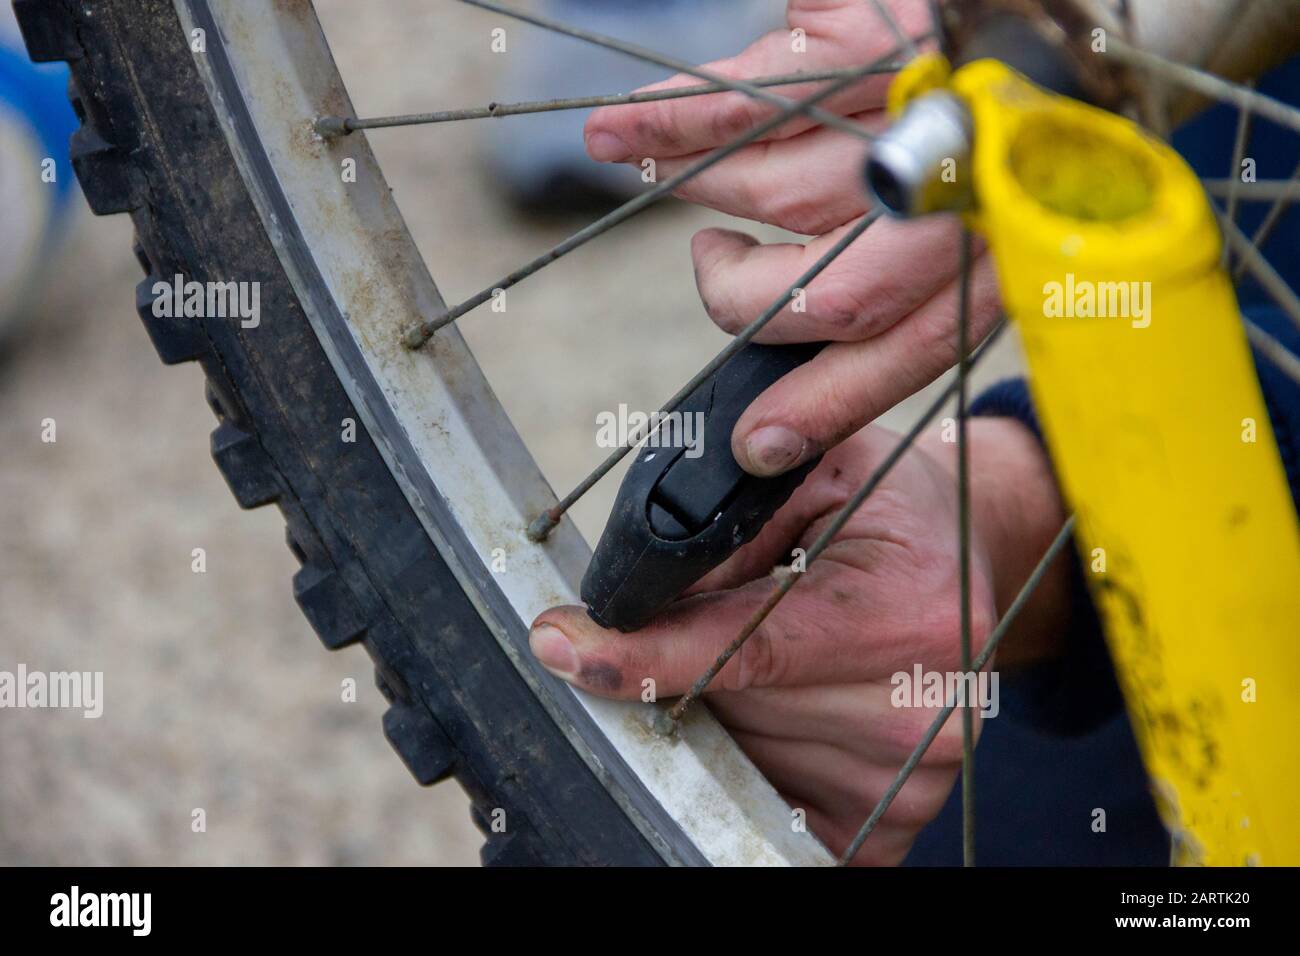 Ein Porträt der Hände einer Person, die eine kleine Fahrradluftpumpe hält,  um einen flachen Reifen auf einem Rad eines Mountainbike-Radfahrrads zu  blasen Stockfotografie - Alamy